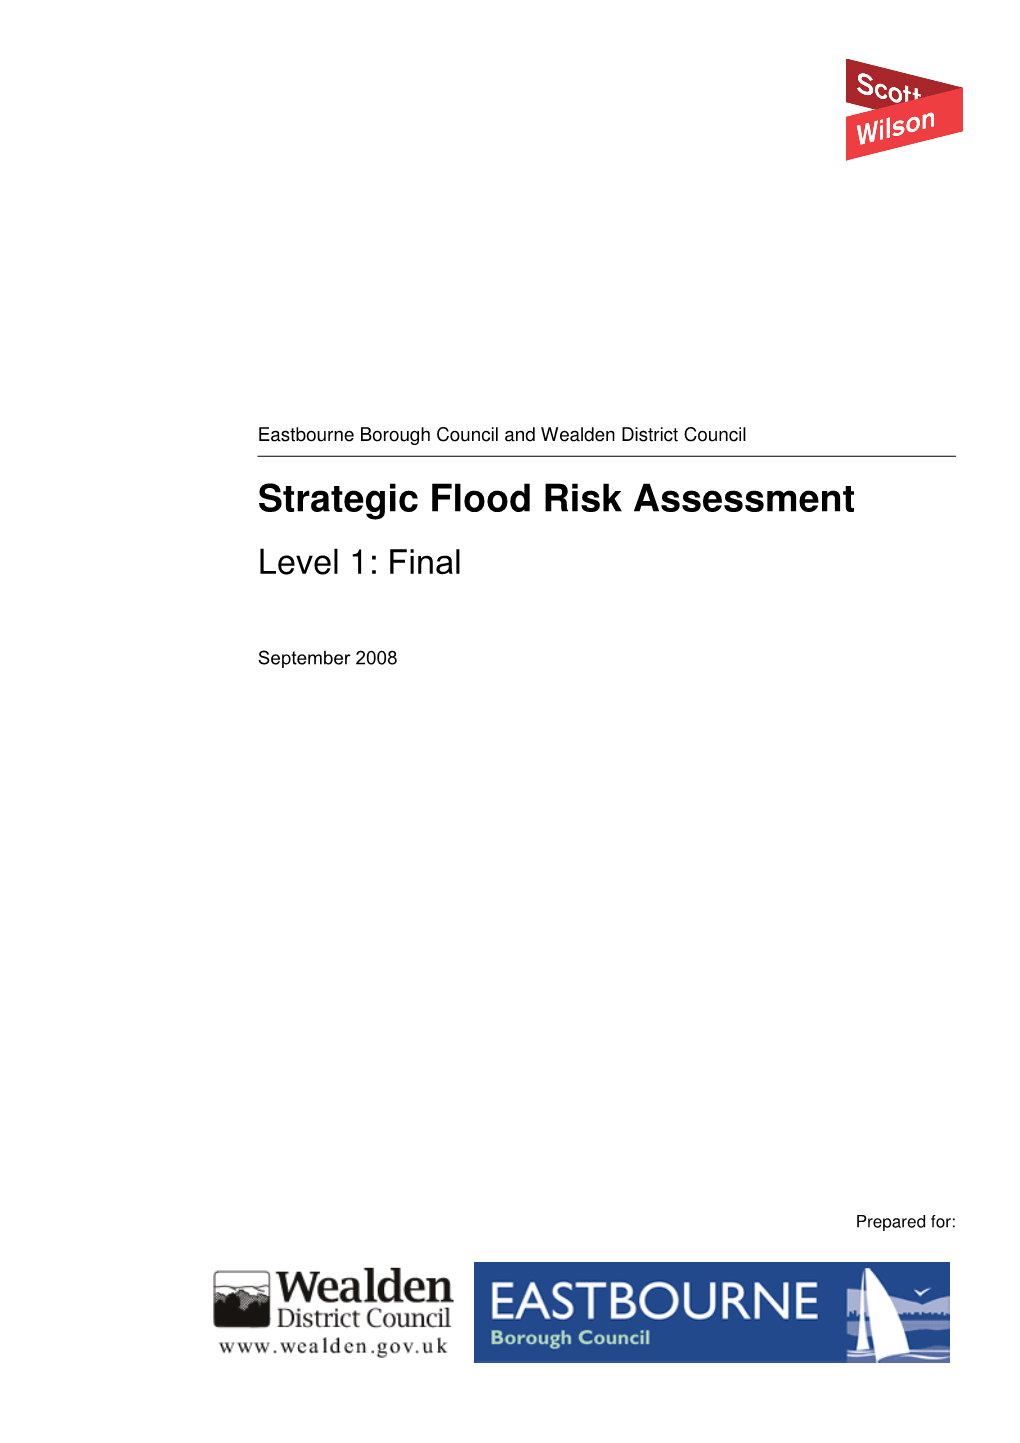 Strategic Flood Risk Assessment Level 1: Final